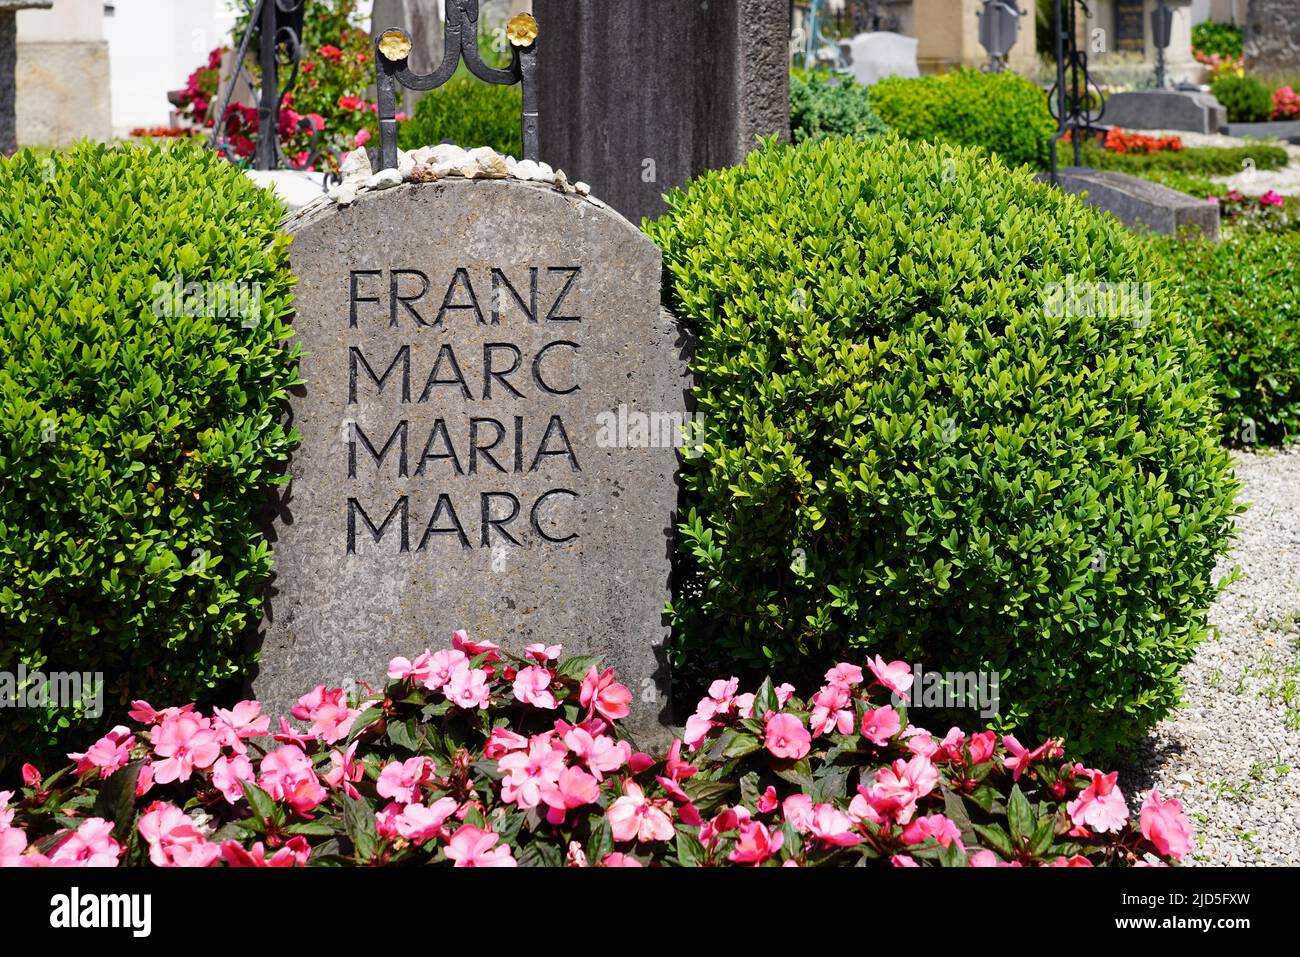 Tumba del pintor y miembro de Der Blaue Reiter Franz Marc y su esposa María en el cementerio de la iglesia de San Miguel, Kochel, Baviera, Alemania, 18.6.22 Foto de stock